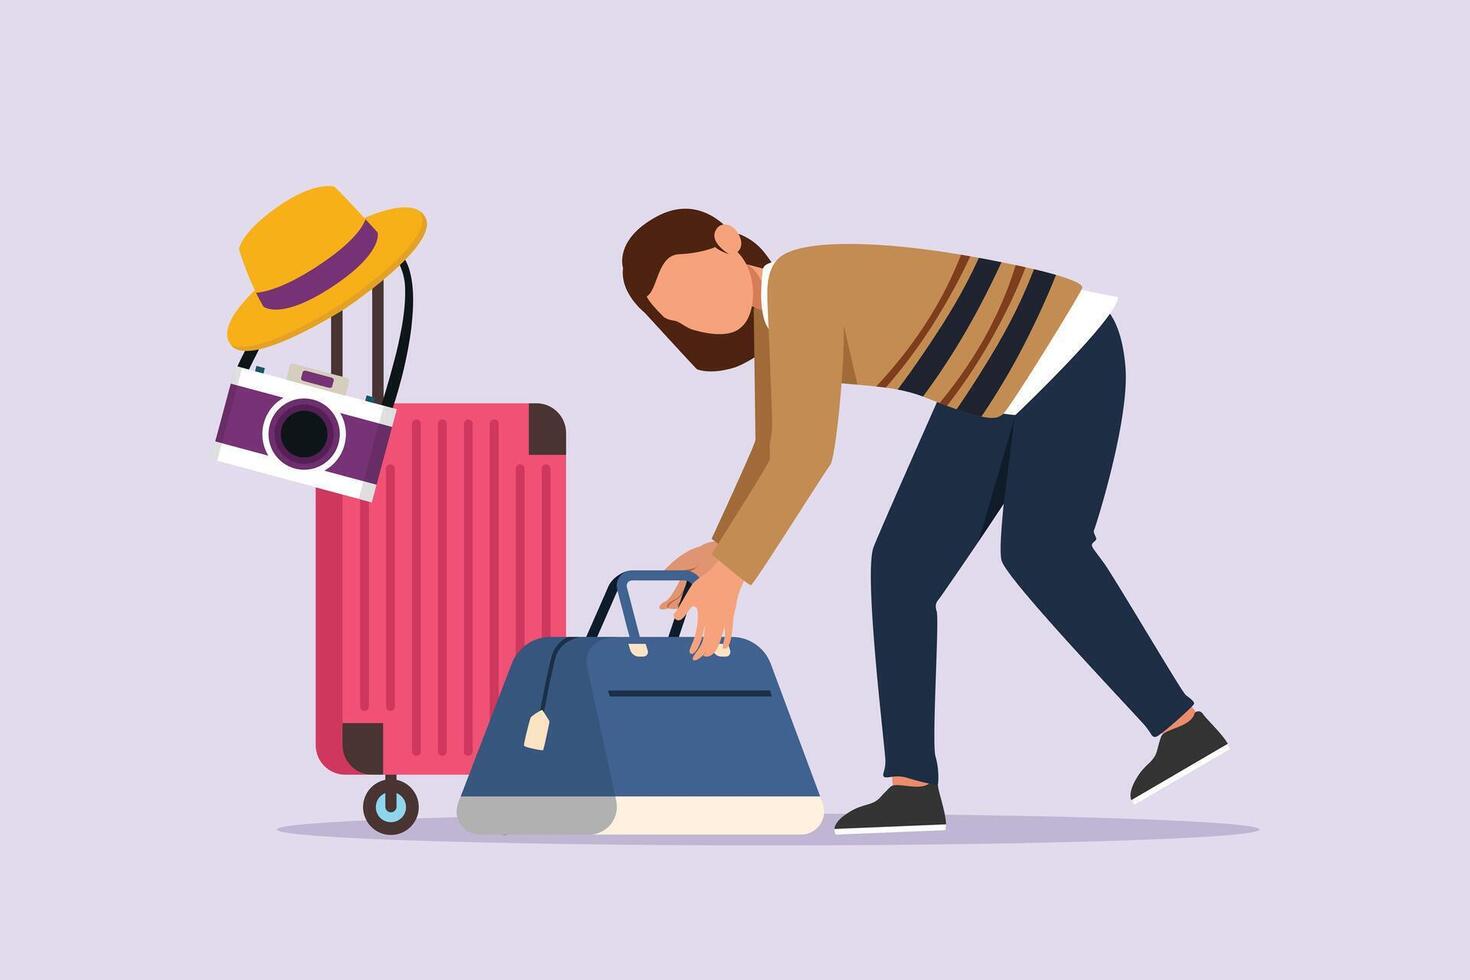 vrouw voorbereidingen treffen dingen naar Gaan reizend. op reis met zak of koffer concept. gekleurde vlak vector illustratie geïsoleerd.